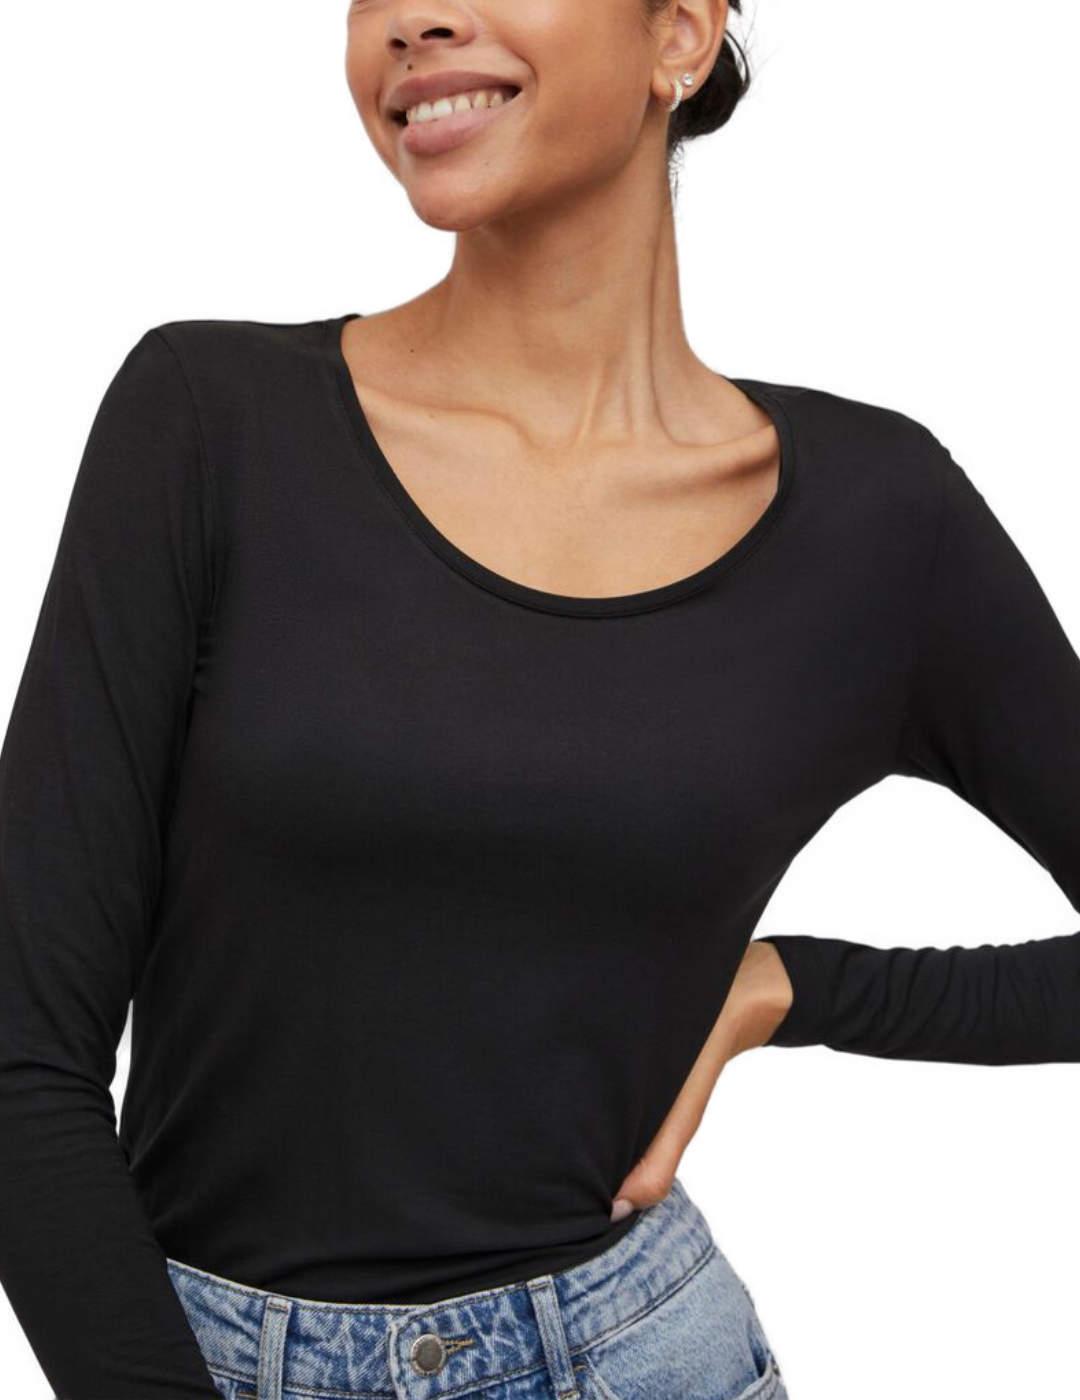 Camiseta Vila Daisy negra manga larga para mujer-